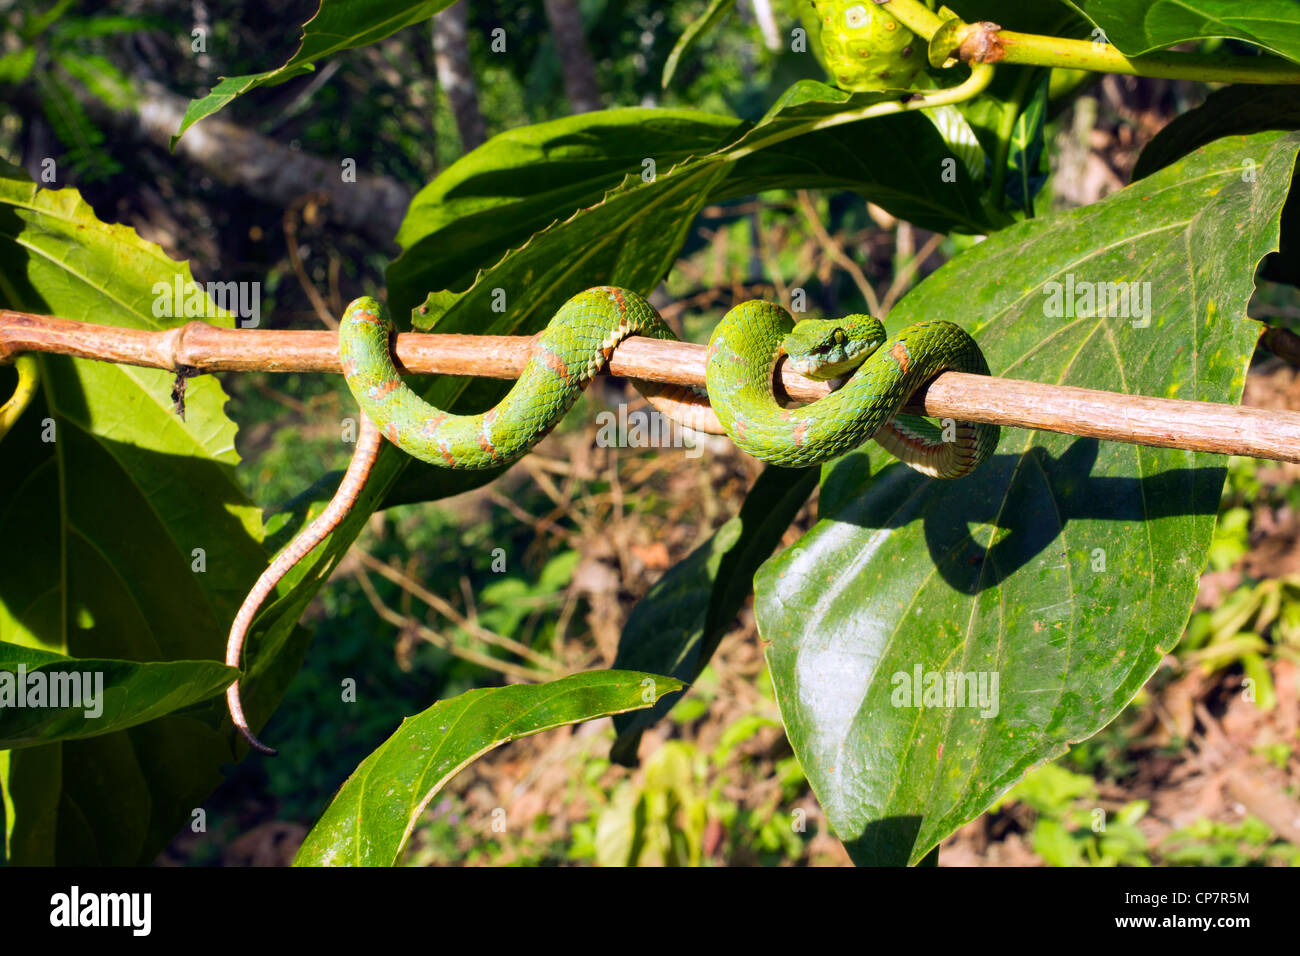 Eyelash viper (Bothriechis schlegelii) A venomous pitviper from Western Ecuador Stock Photo